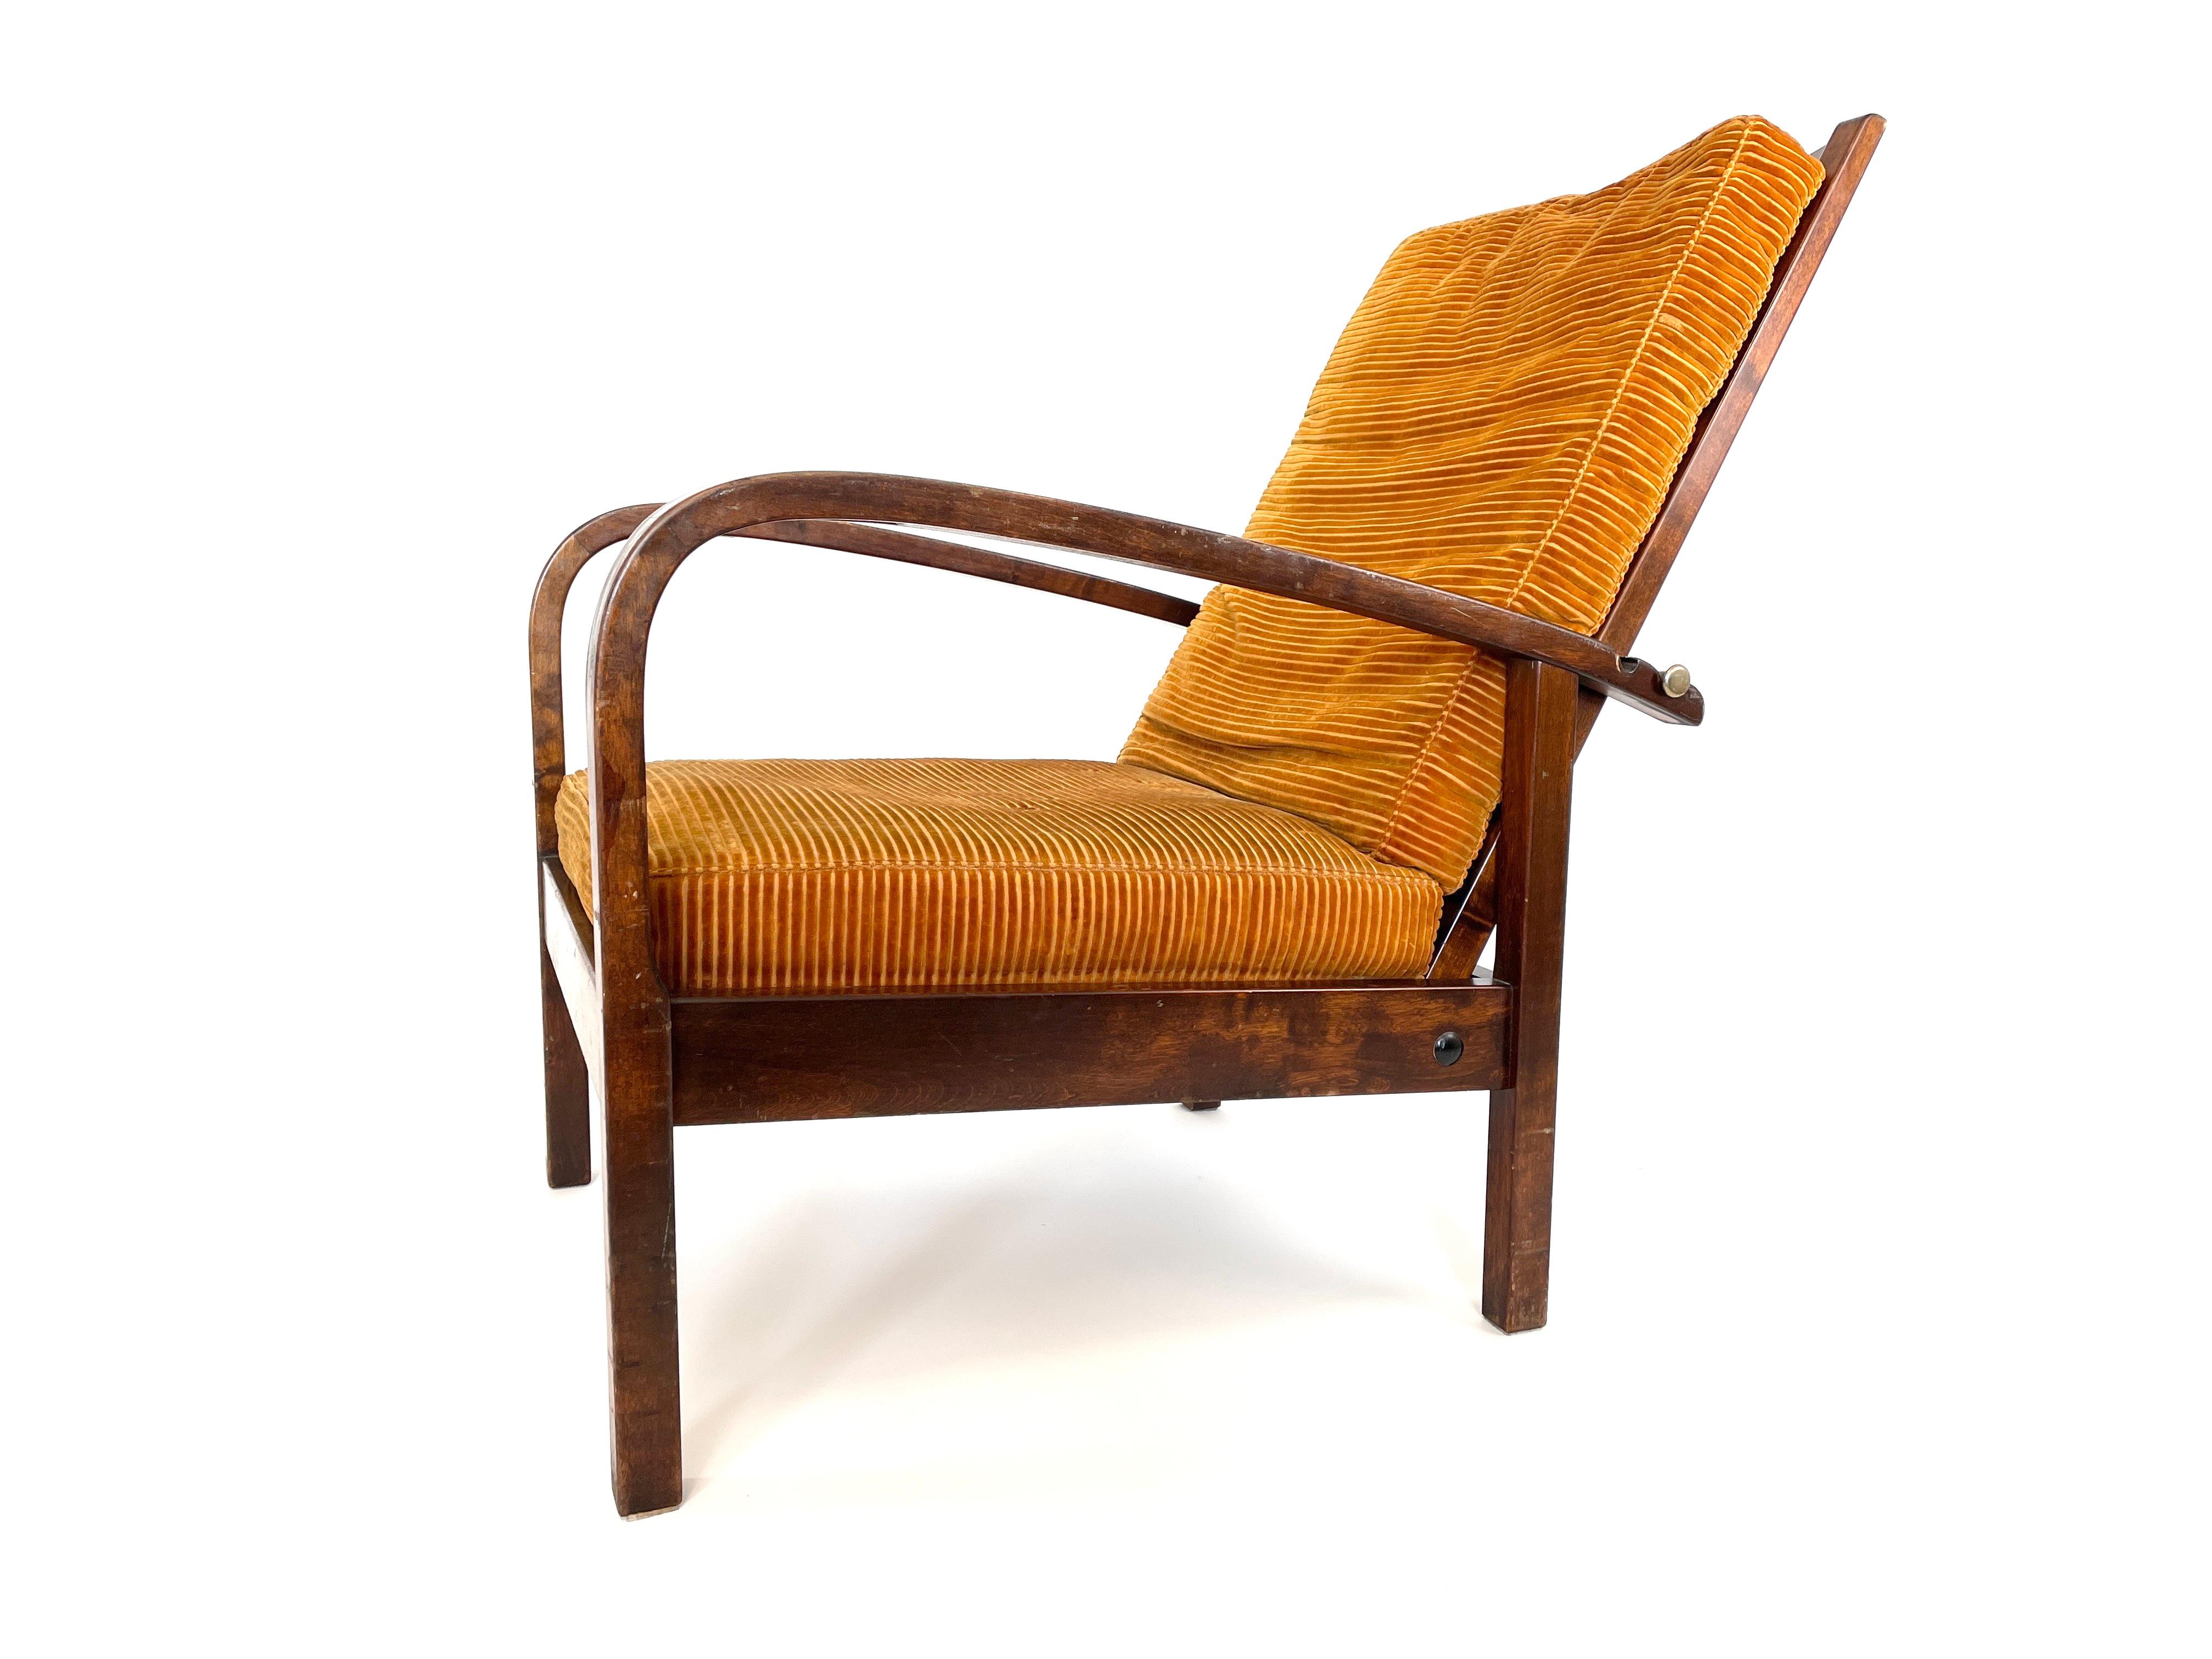 Other Original Torni Chair by Einari Kyöstilä, Finland, 1930 For Sale